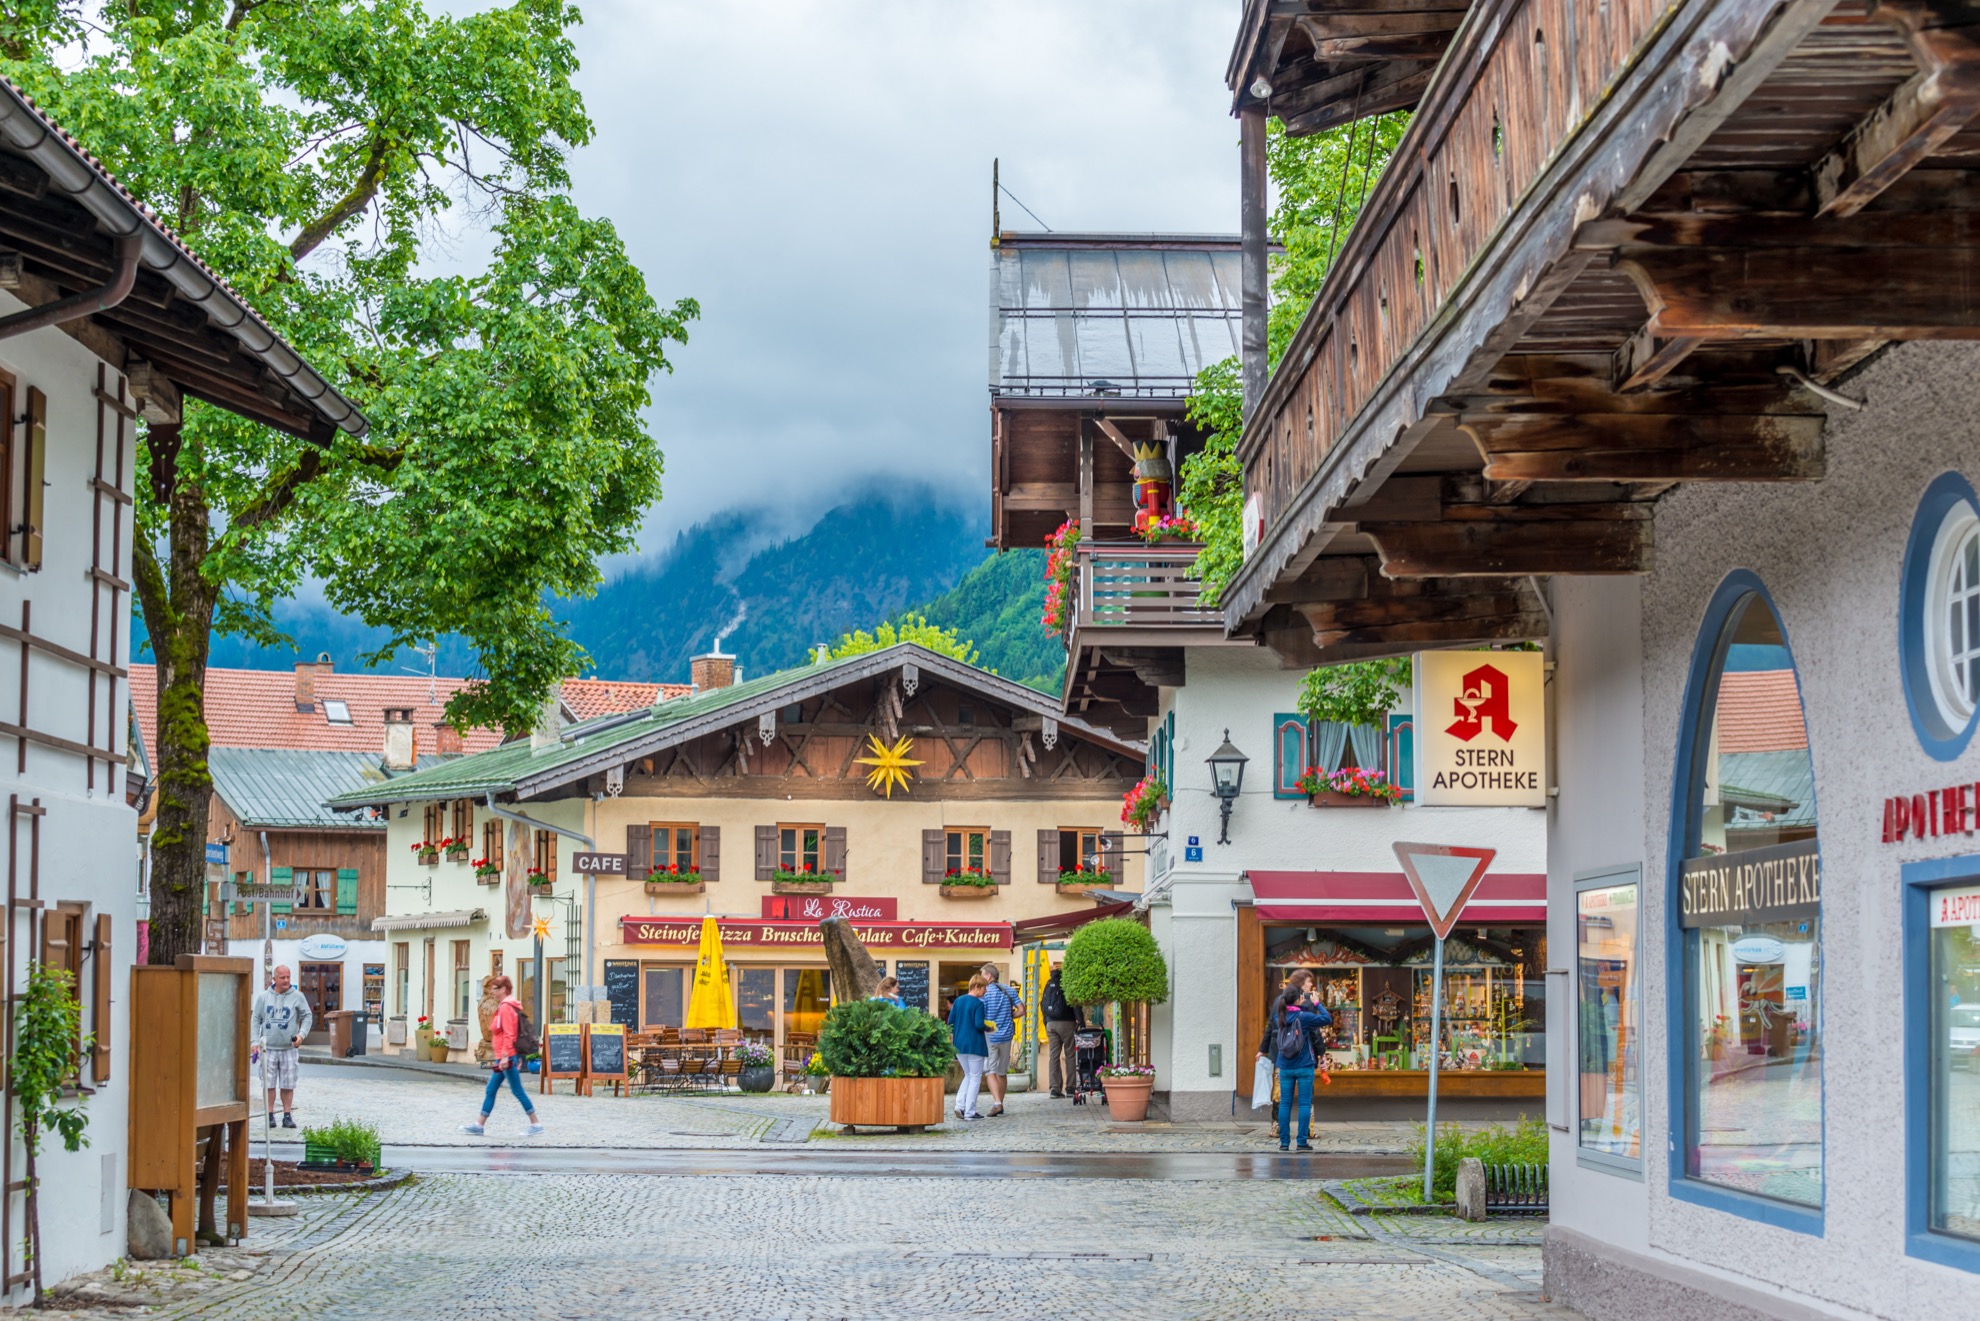 El misterio y la historia del juego de pasión de Oberammergau - 13